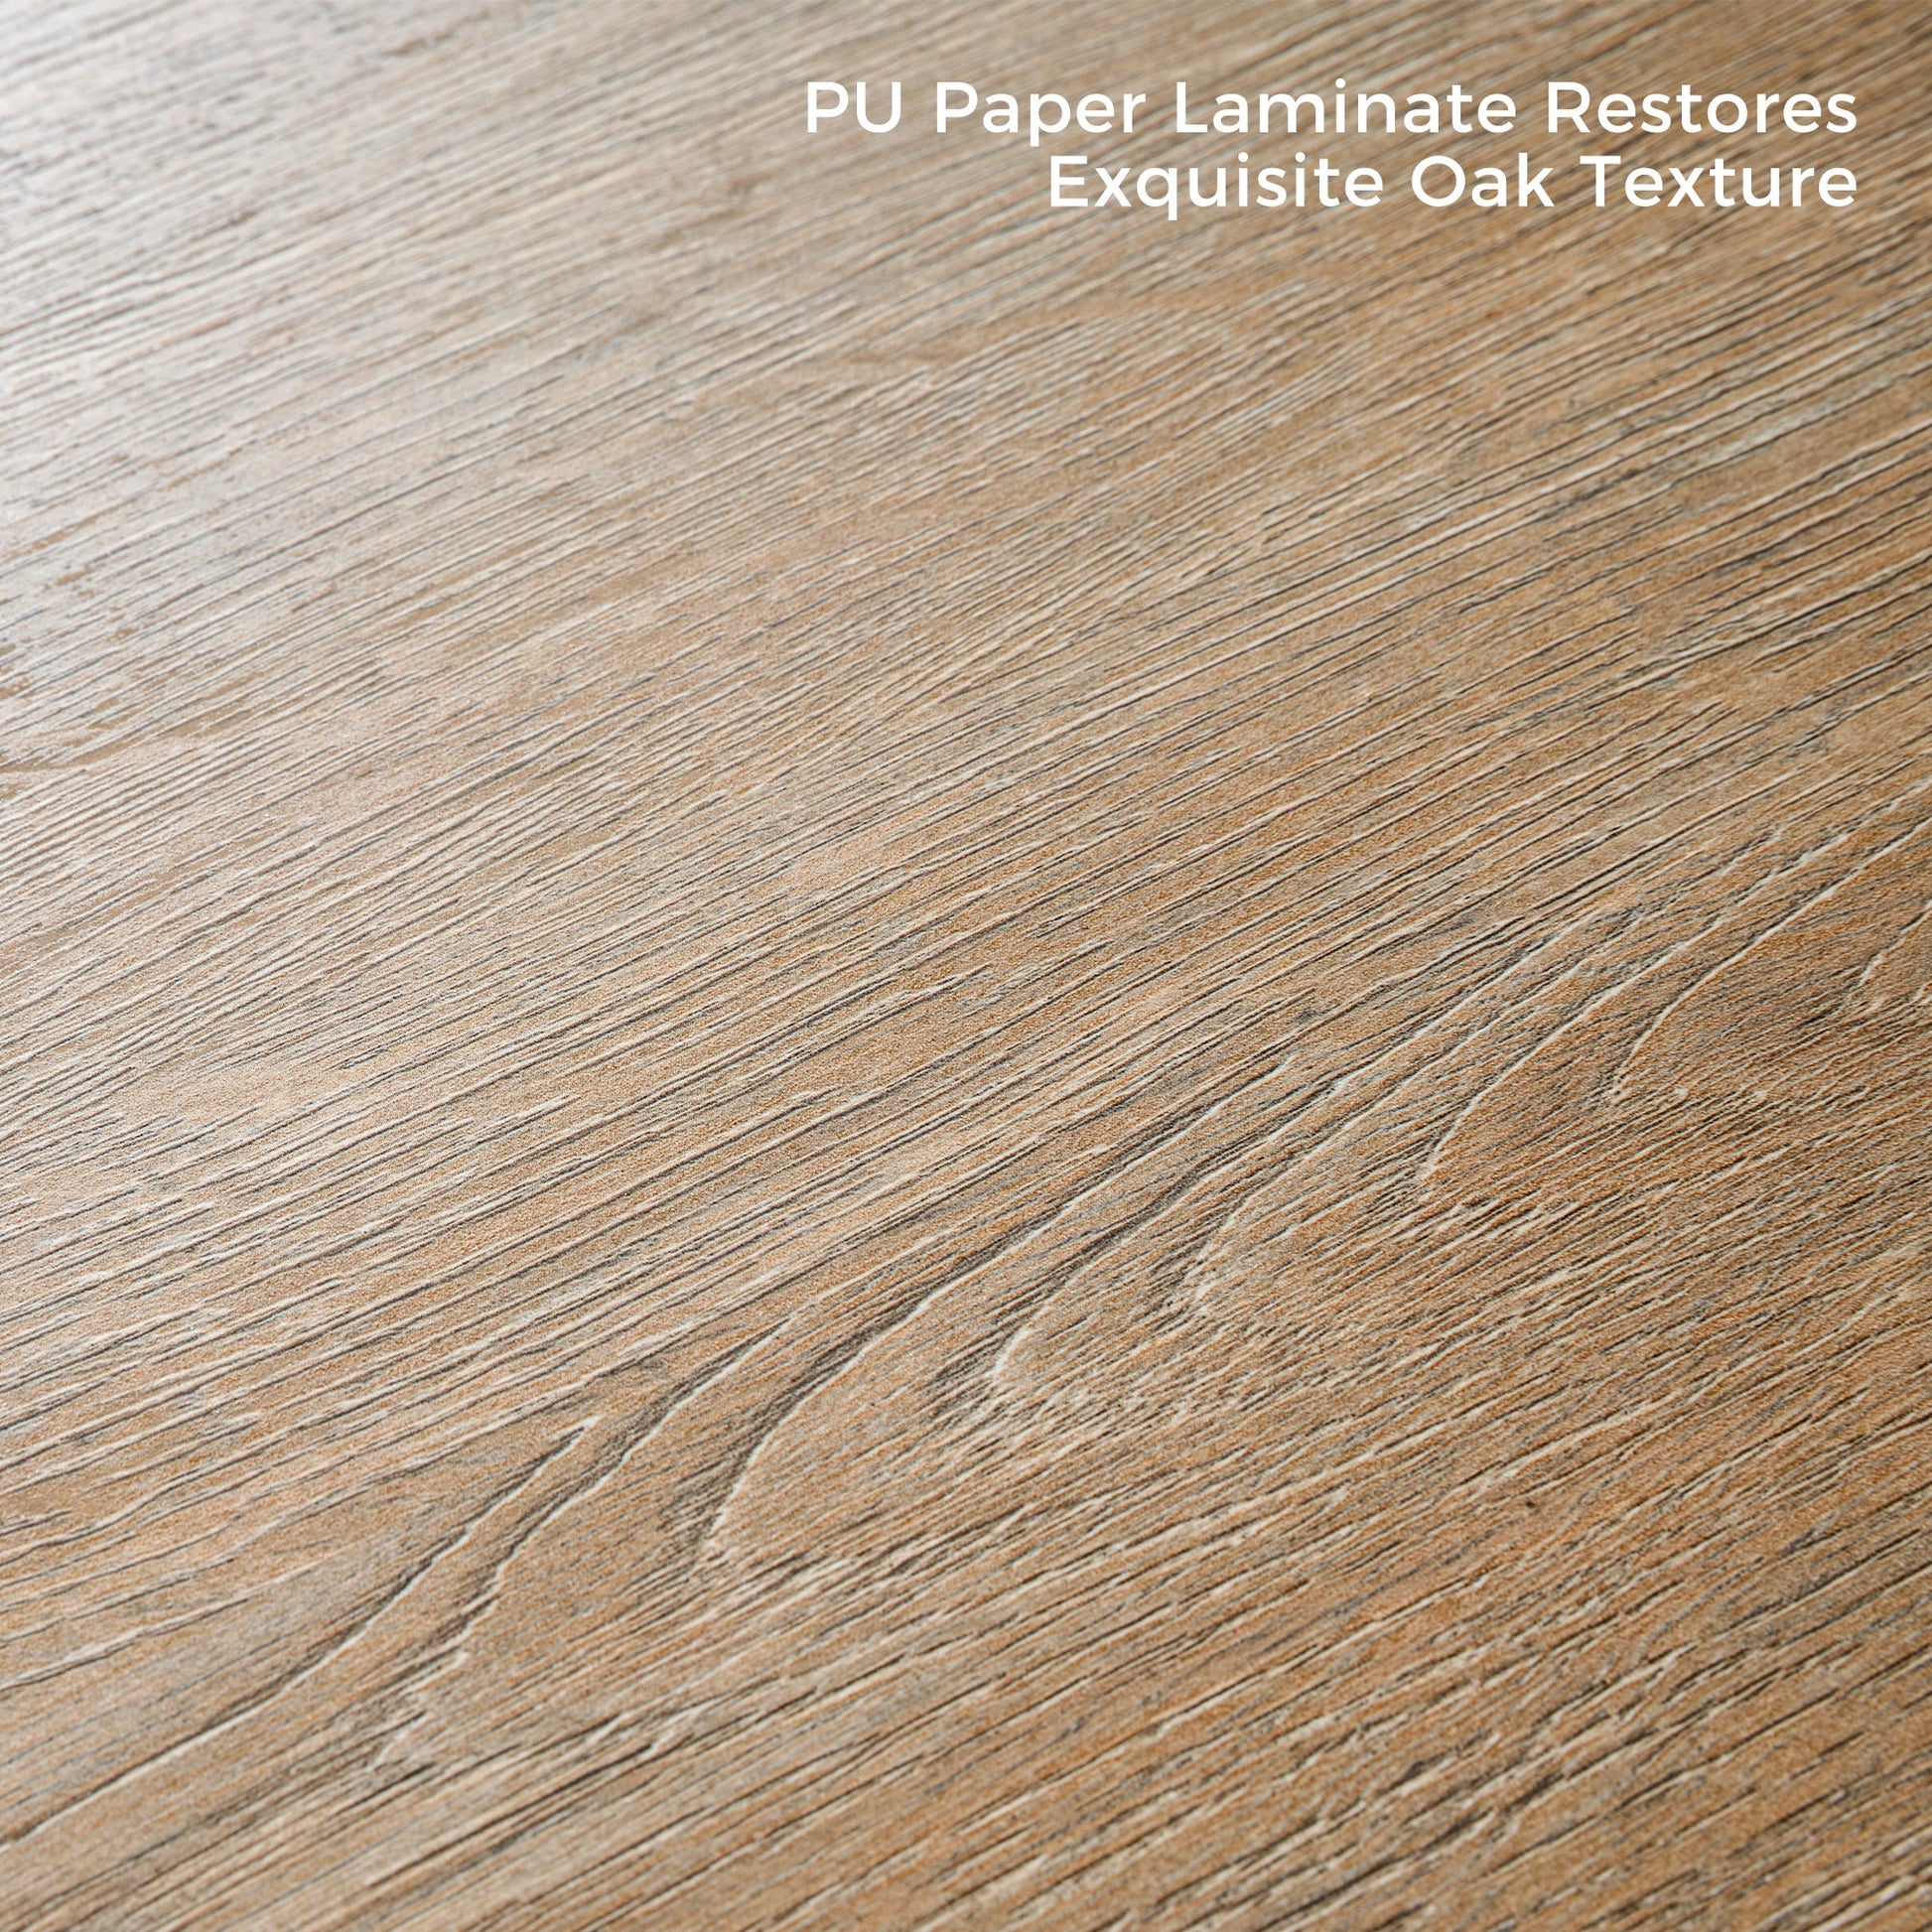 Oak grain textured finish from PU paper laminate